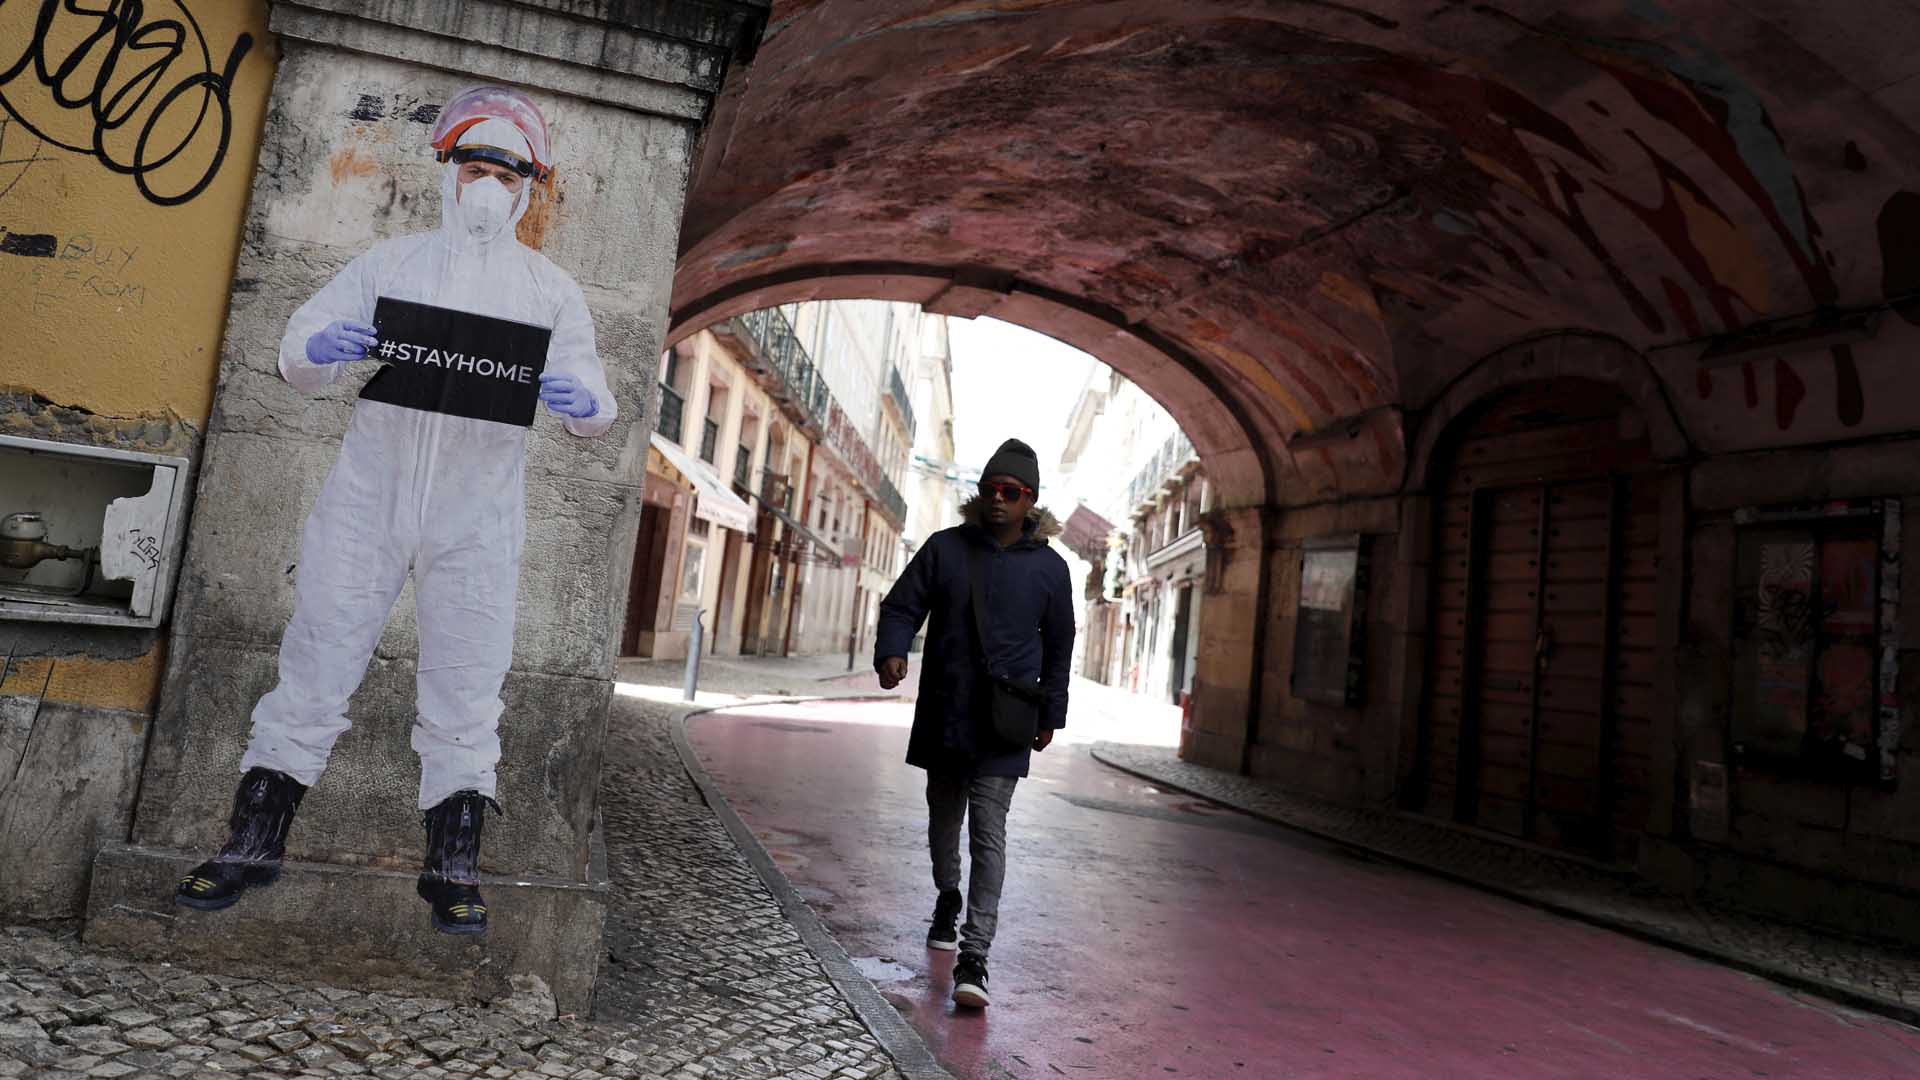 La mortalidad por causas naturales se dispara en Portugal durante la pandemia de coronavirus